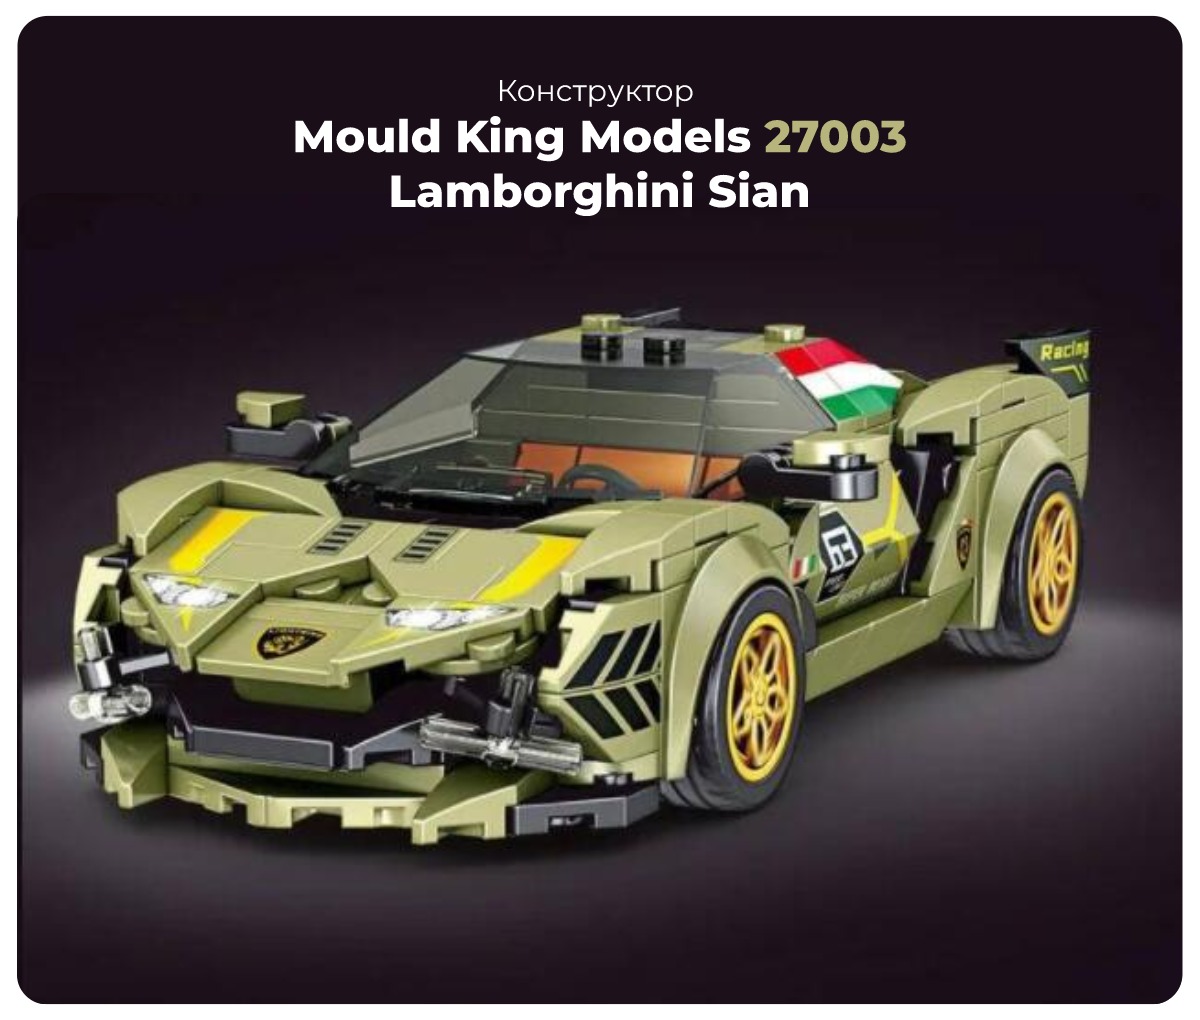 Mould-King-Models-27003-Lamborghini-Sian-01